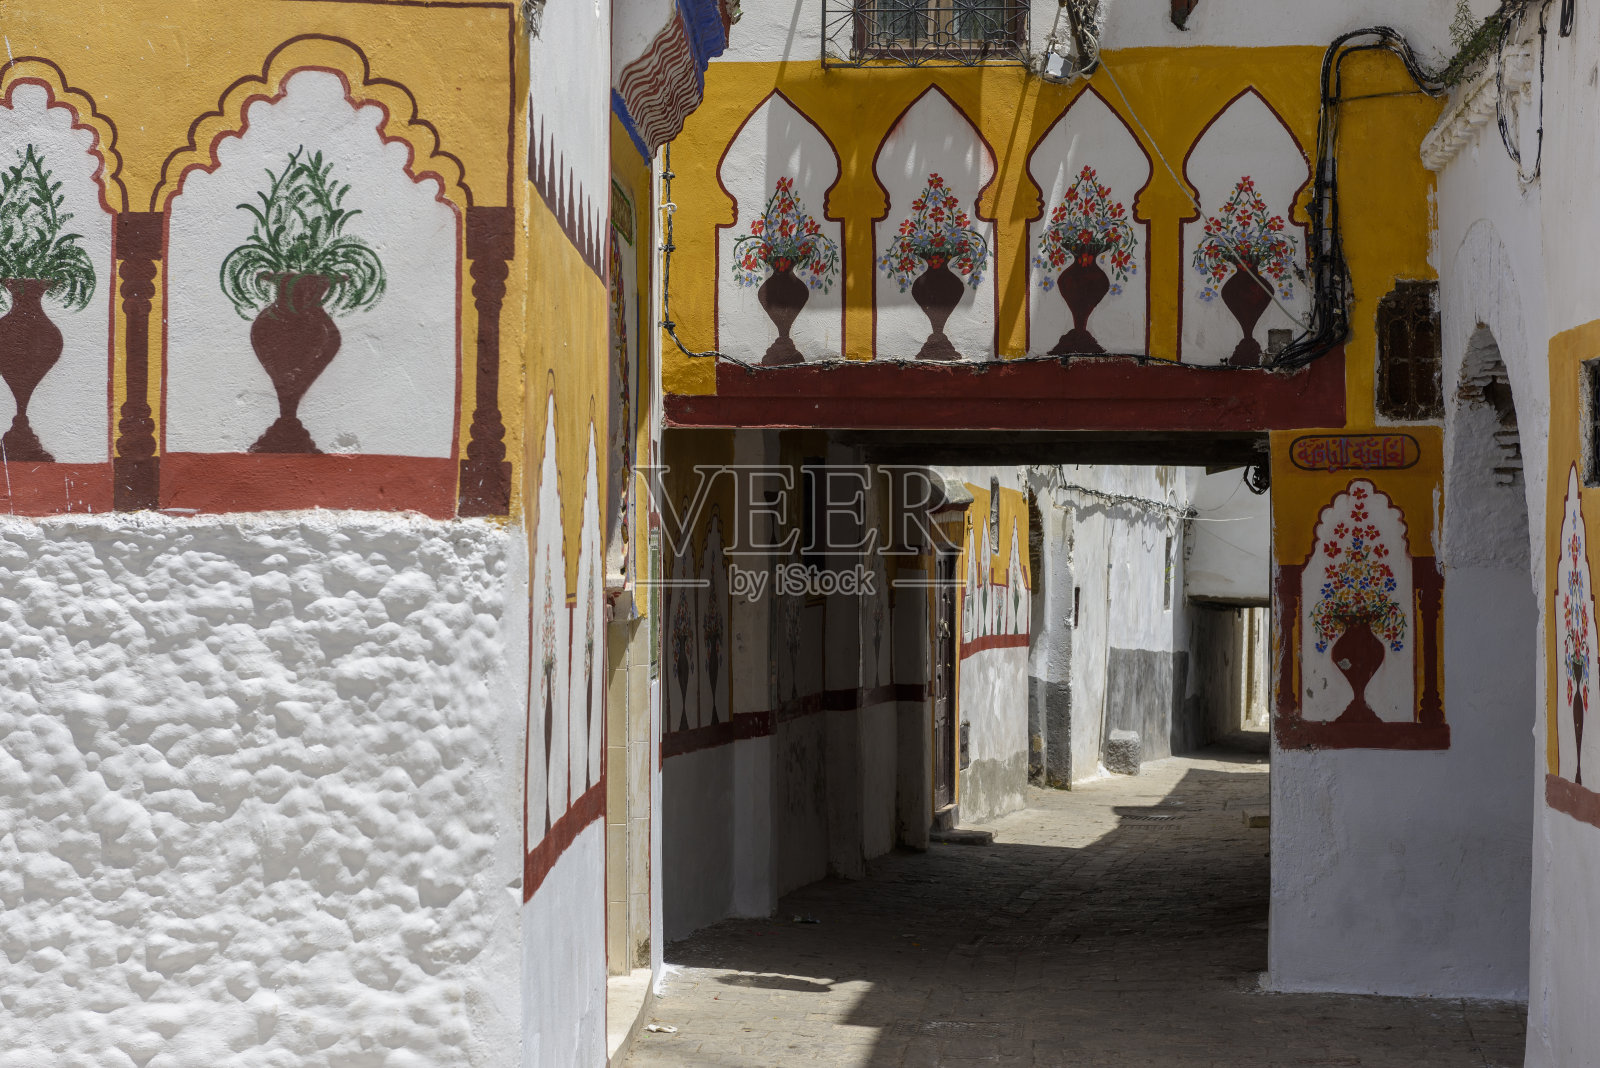 摩洛哥特图安街道上的油漆墙照片摄影图片